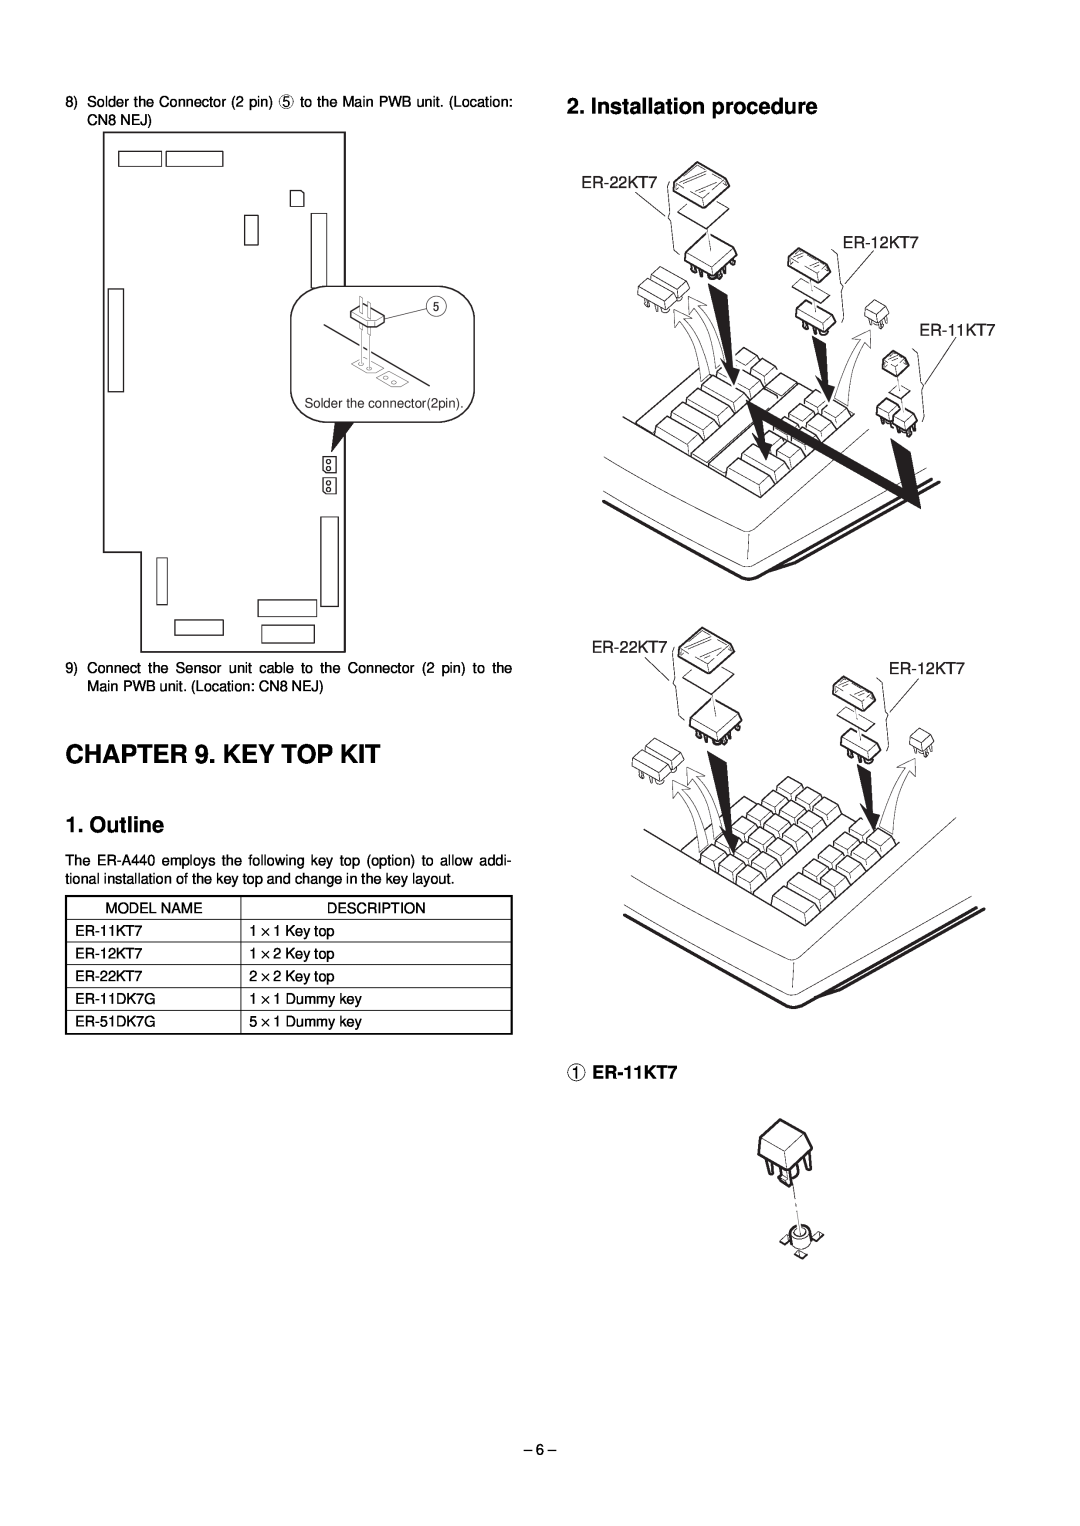 Sharp ER-A440 manual Key Top Kit, Installation procedure, Outline, ER-11KT7 